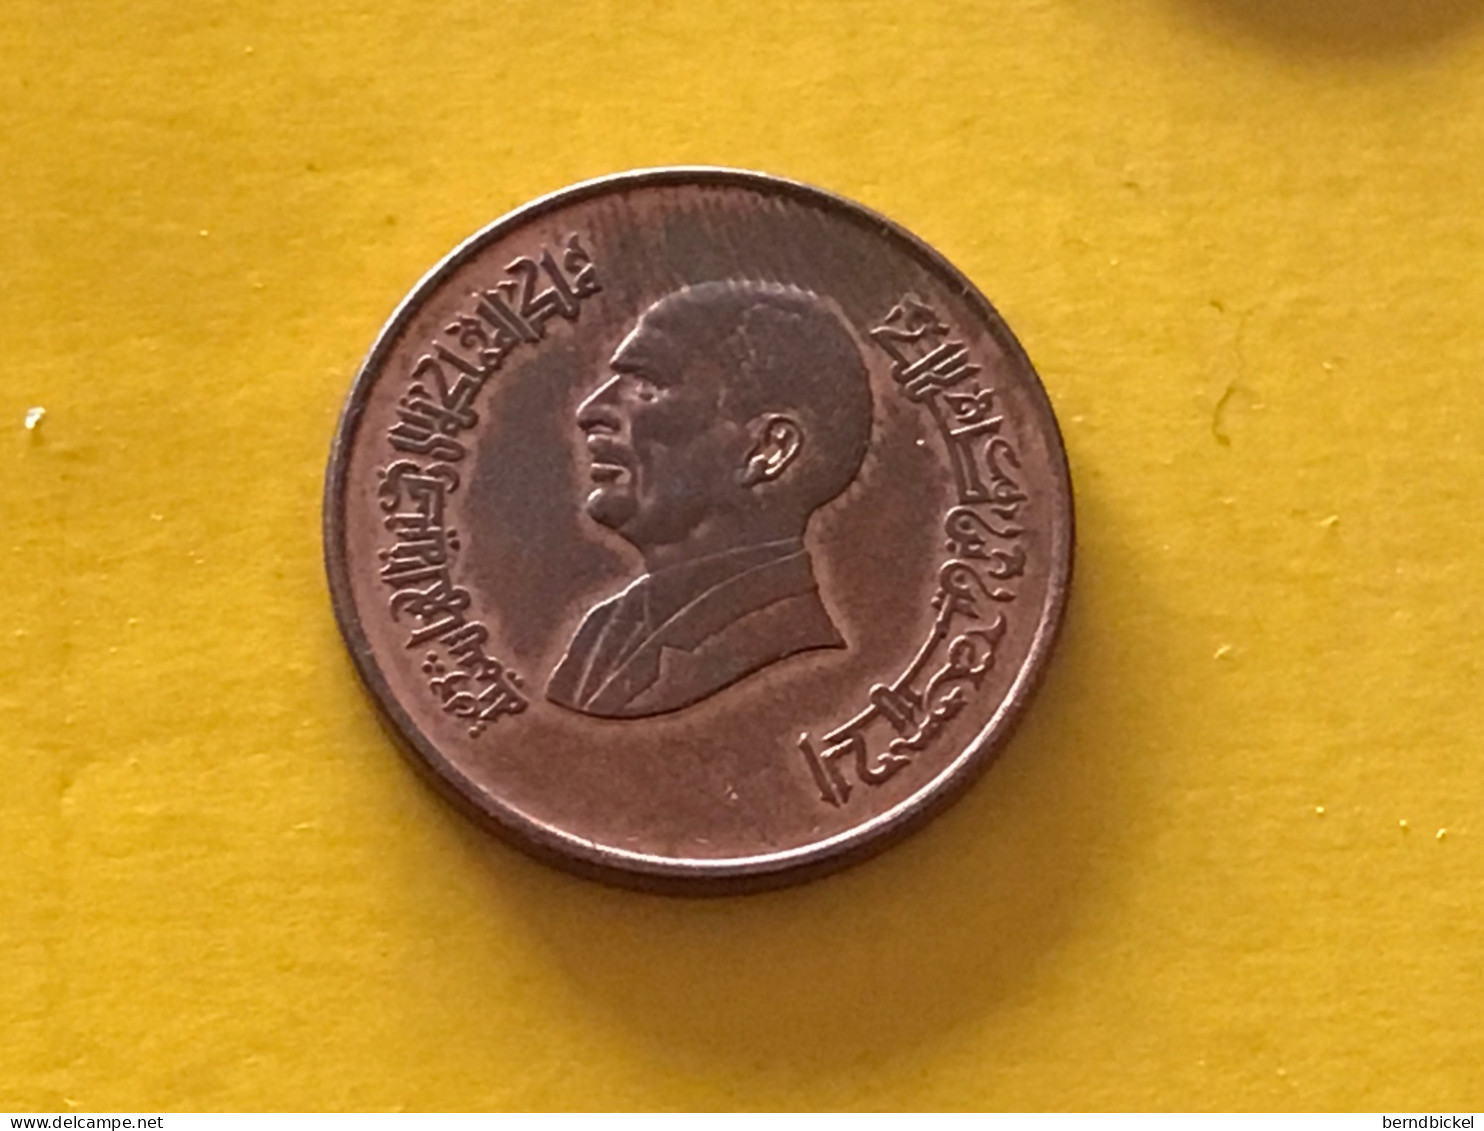 Münze Münzen Umlaufmünze Jordanien 1/2 Quirsch 1996 - Jordan